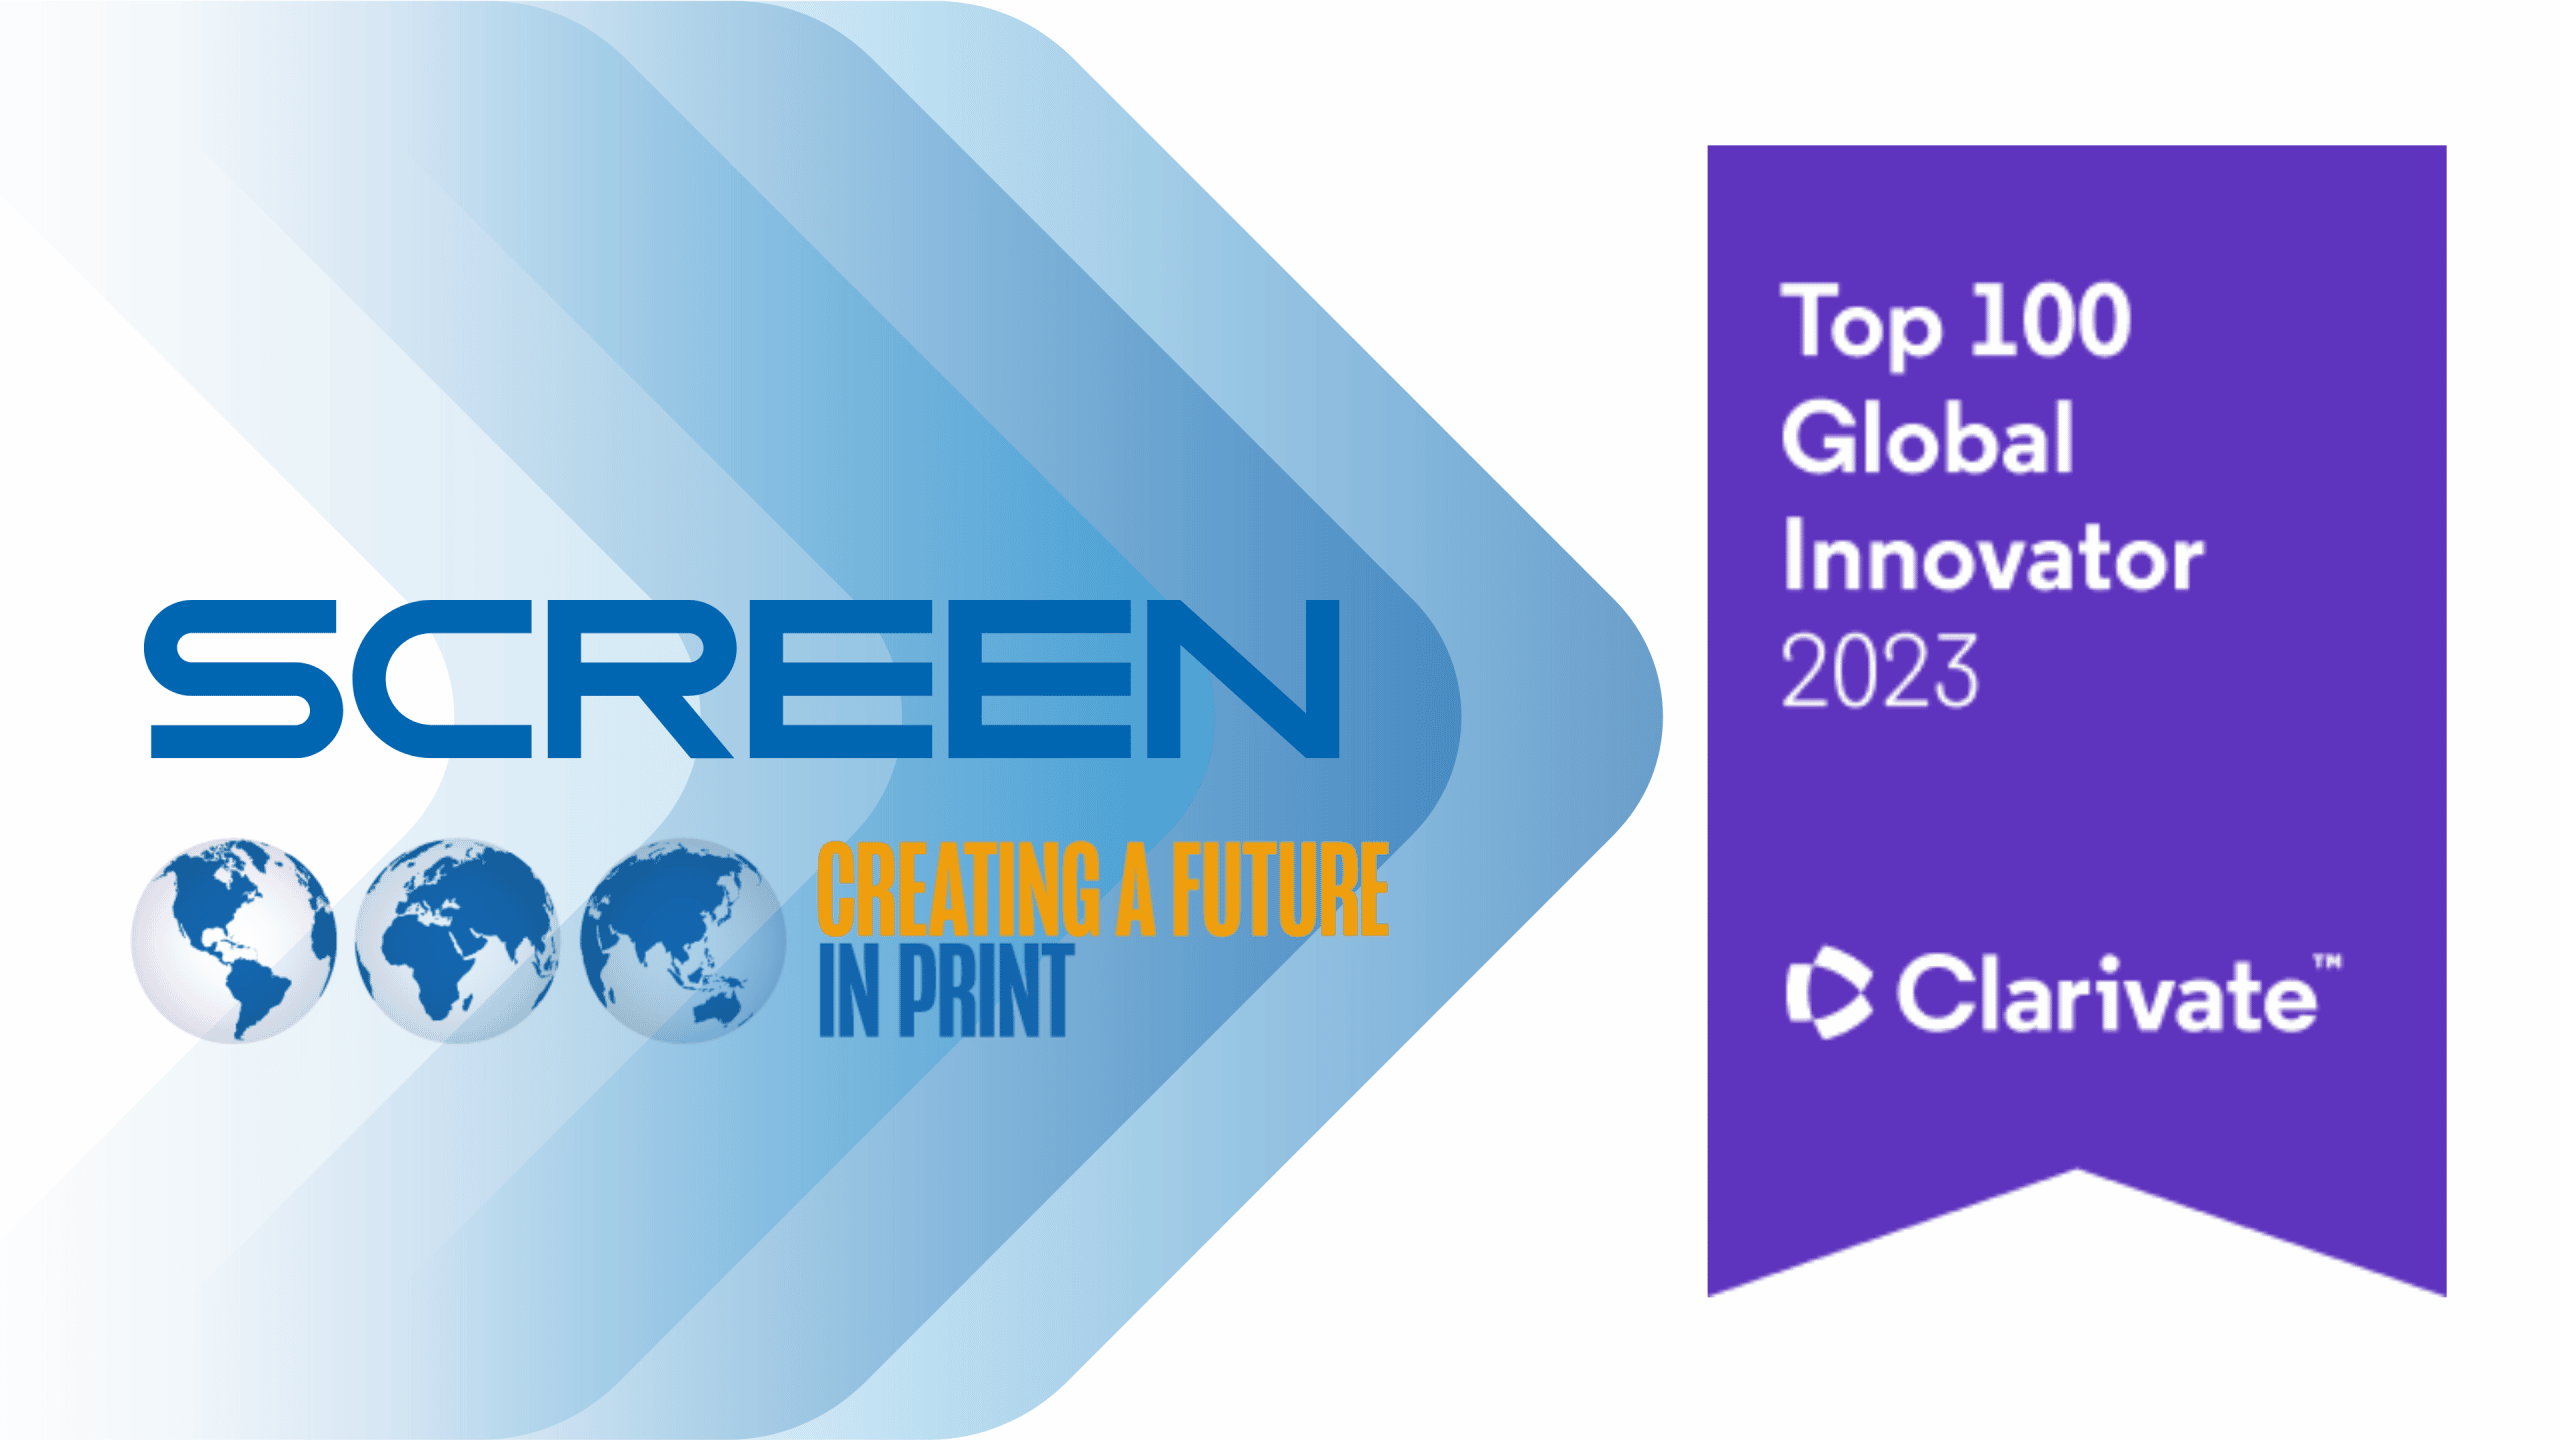 Image from SCREEN nominé par Clarivate au top 100 des innovateurs mondiaux en 2023